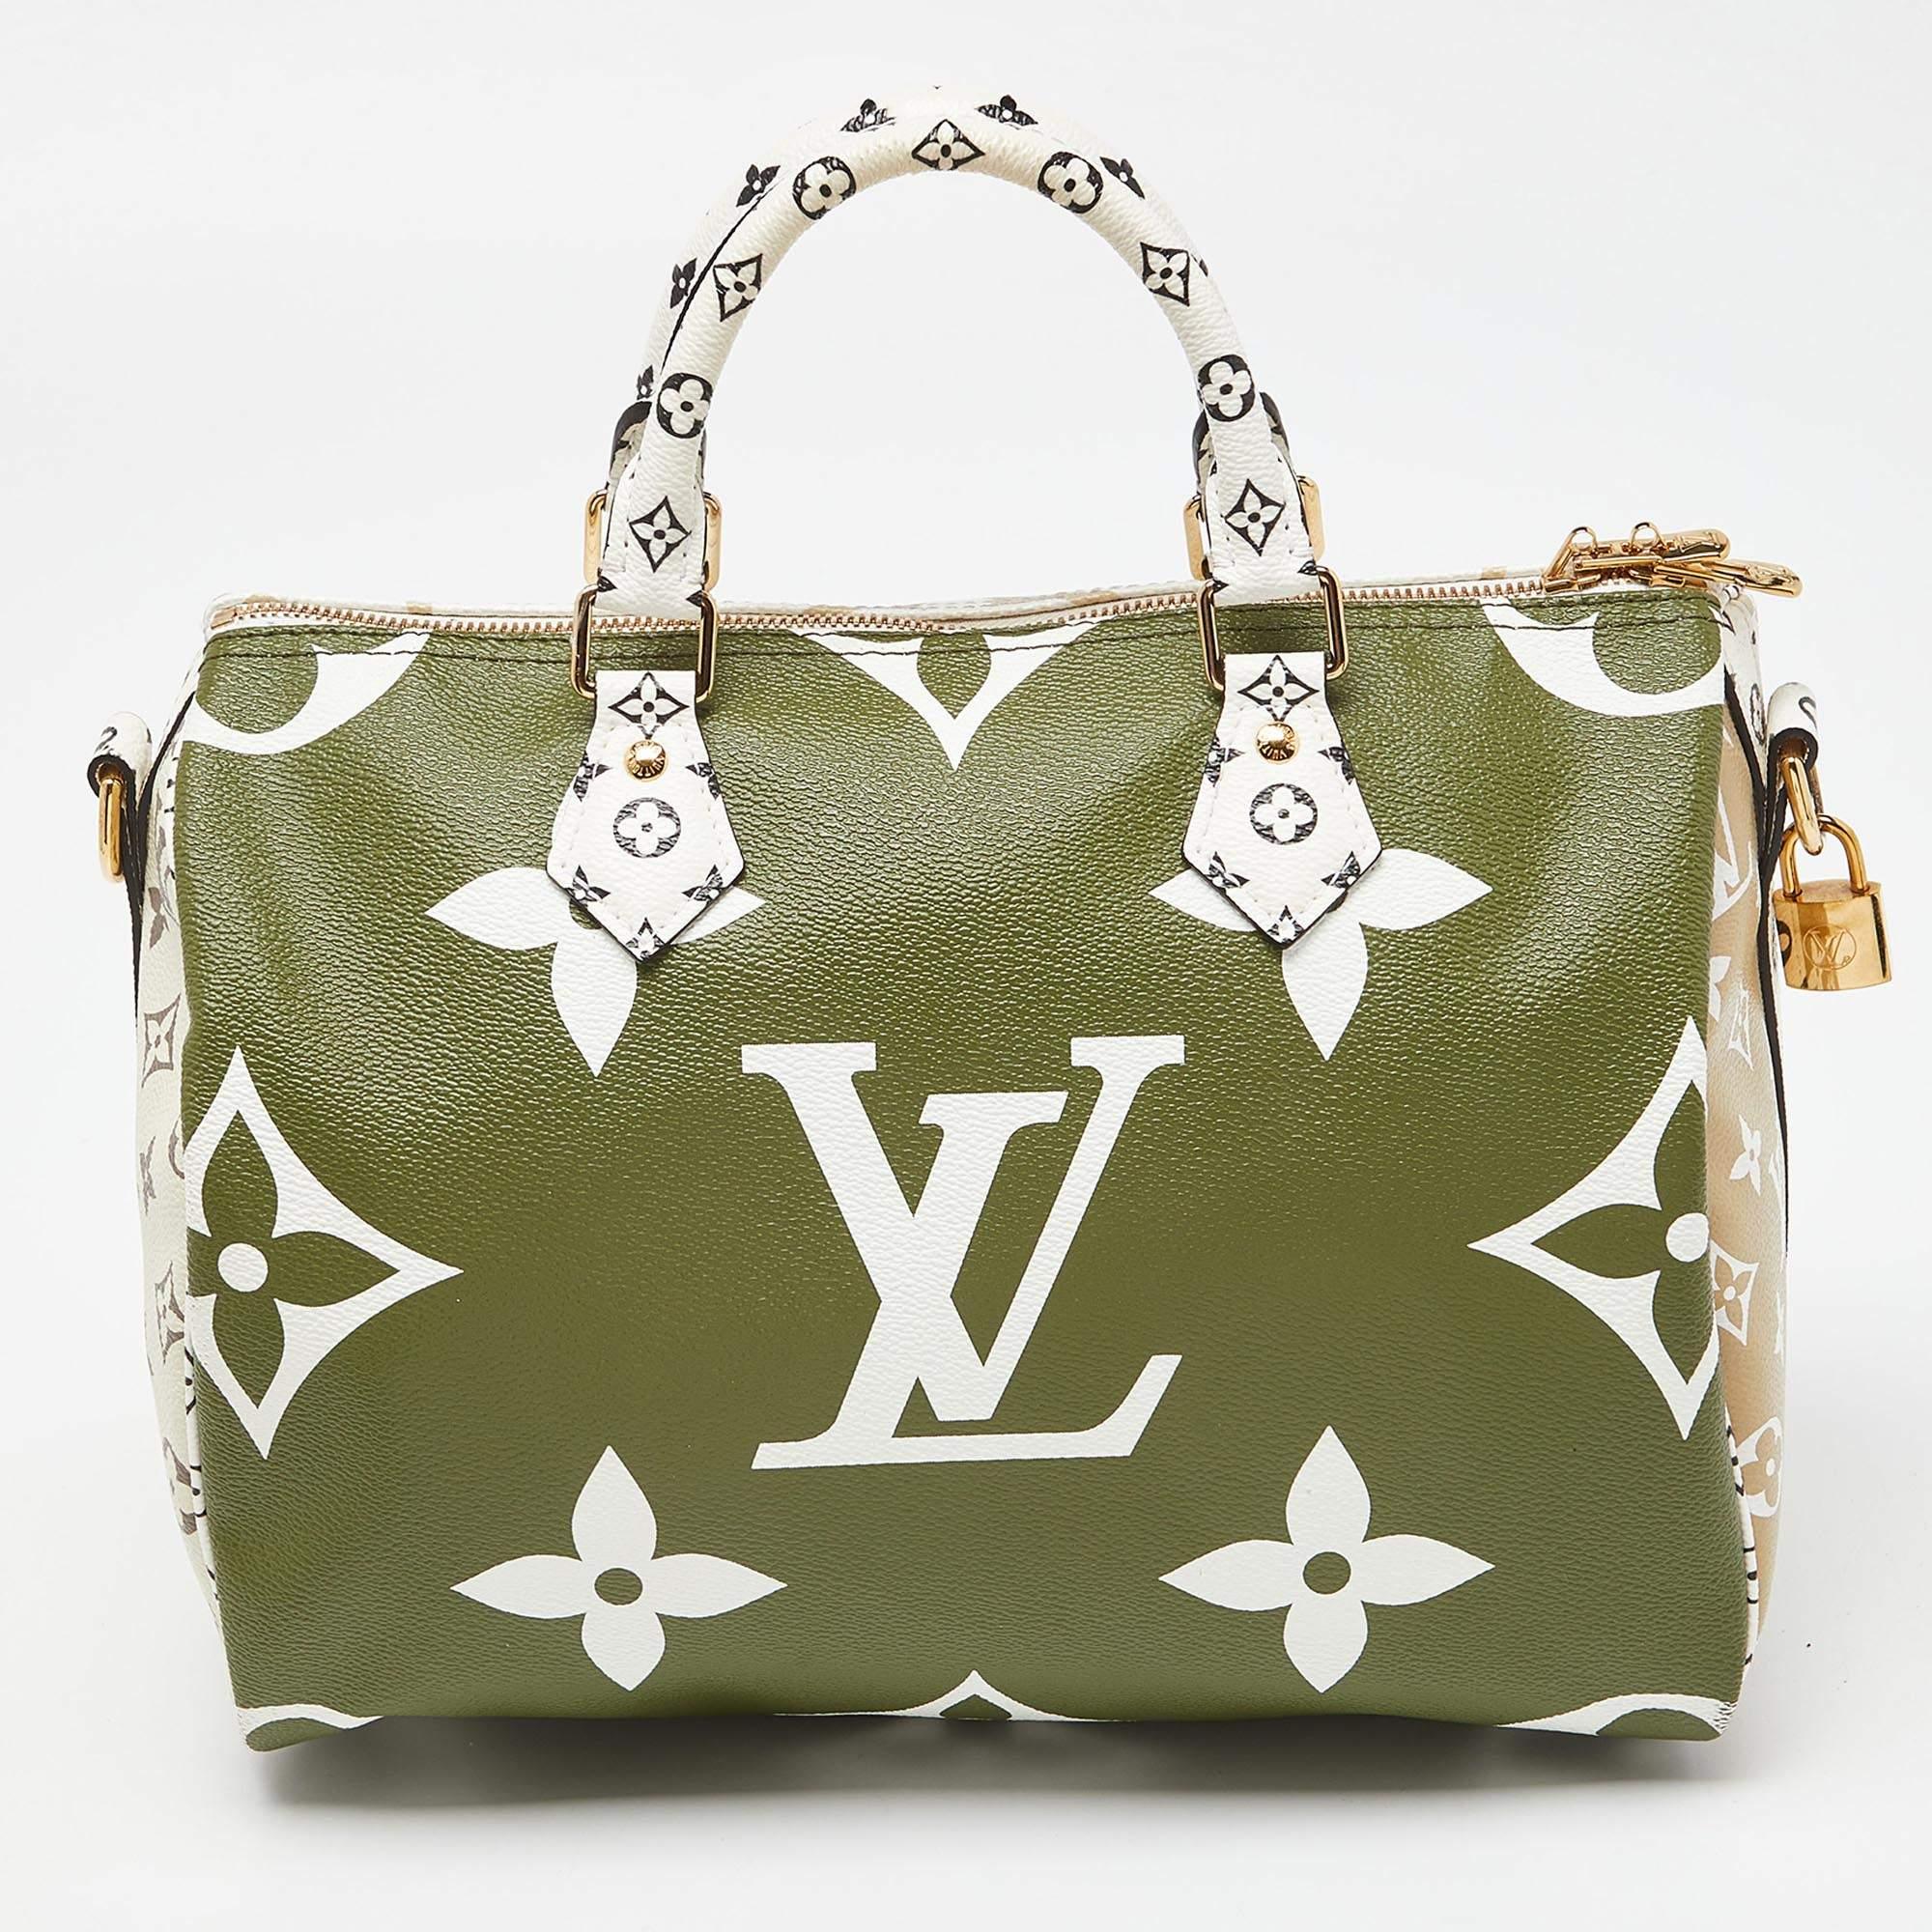 Diese Speedy Bandouliere 30 Tasche von Louis Vuitton wird als eine der größten Handtaschen der Mode bezeichnet und bietet jedem einen unvergleichlichen Stil und Luxus. Sie ist aus kaki-beigem Monogram Giant Canvas in einer auffälligen Struktur